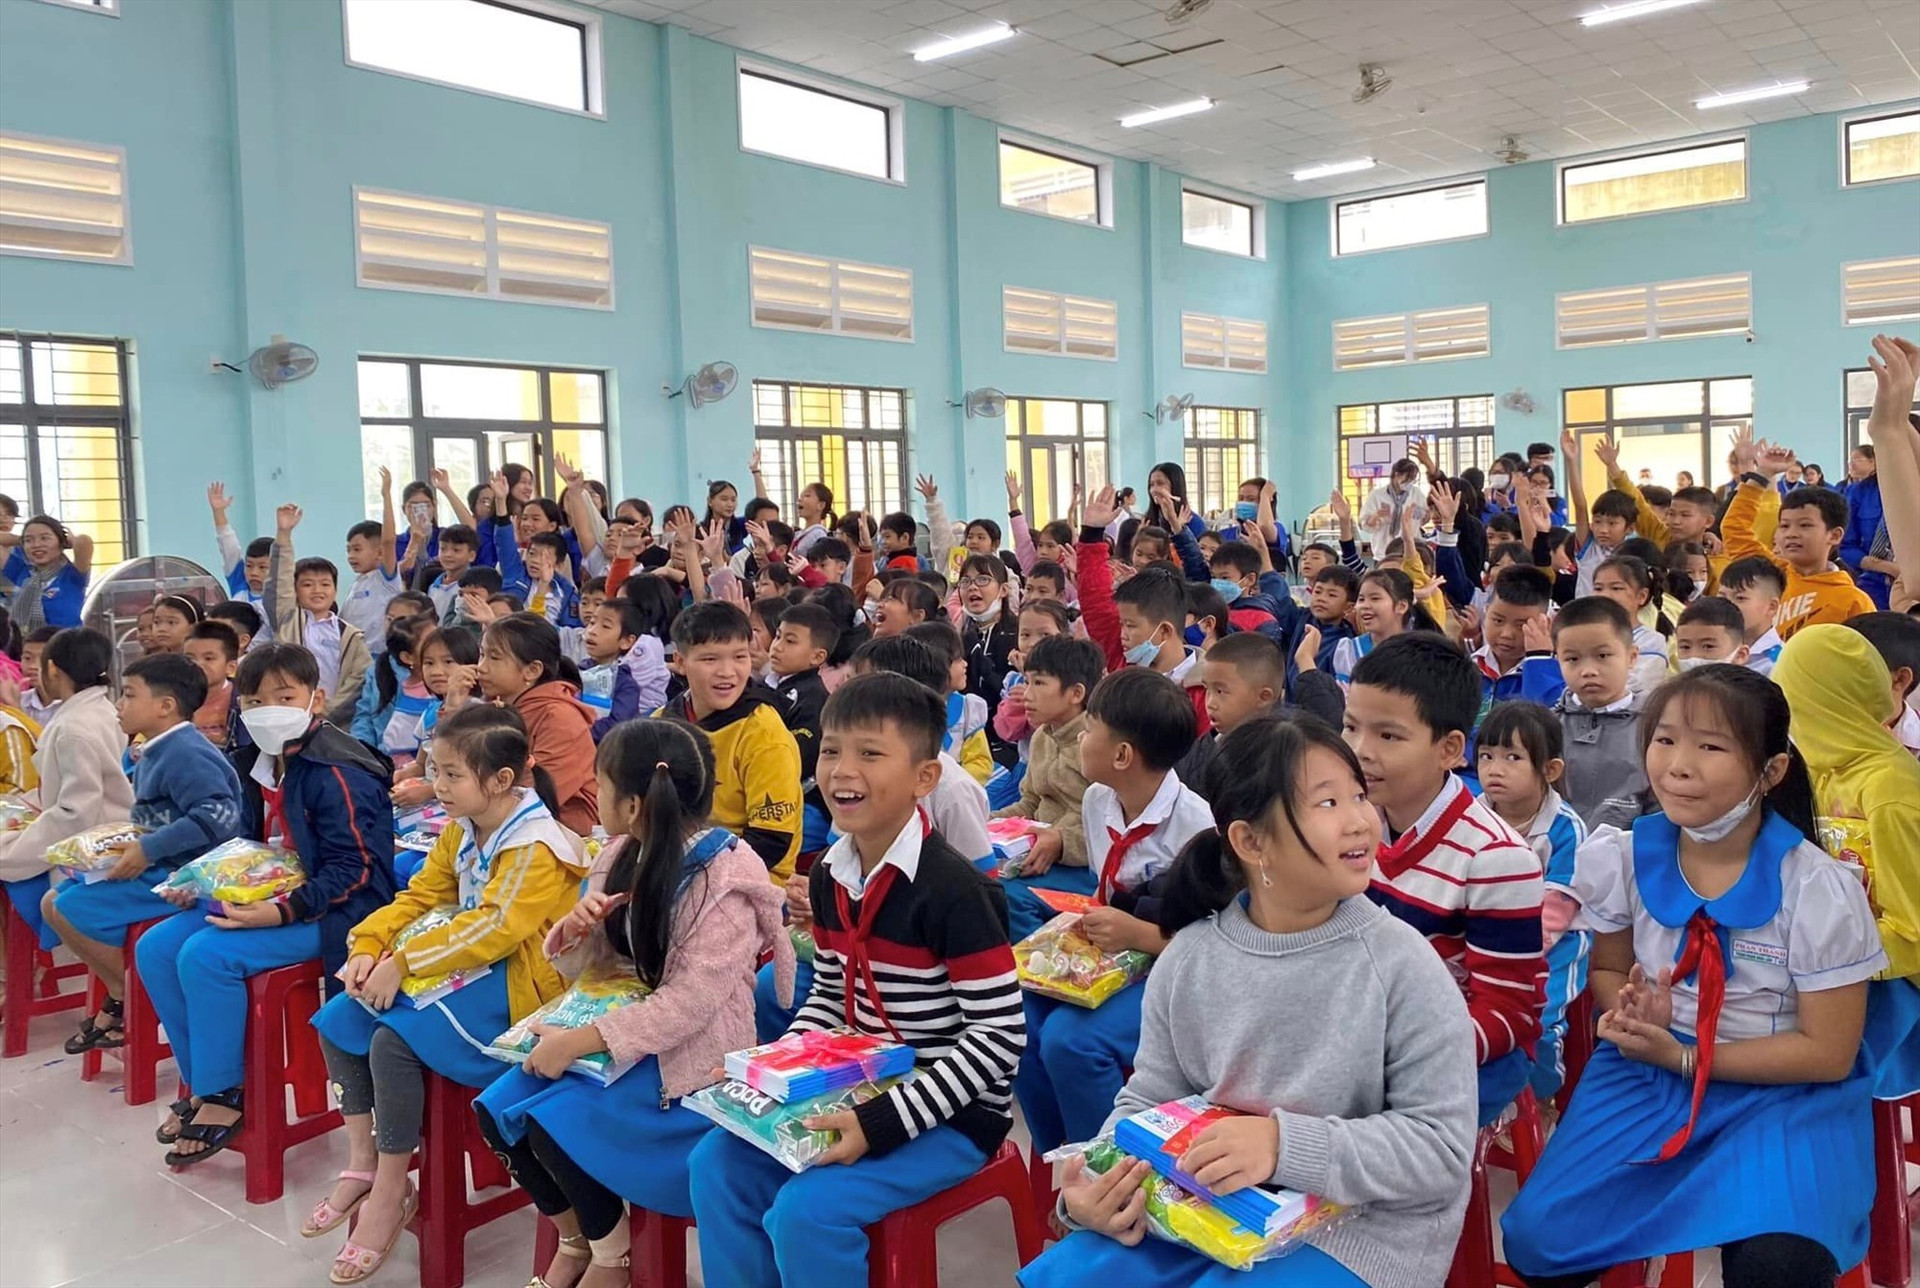 Mang xuân đến với các em học sinh Trường Tiểu học Phan Thanh. Ảnh: M.L